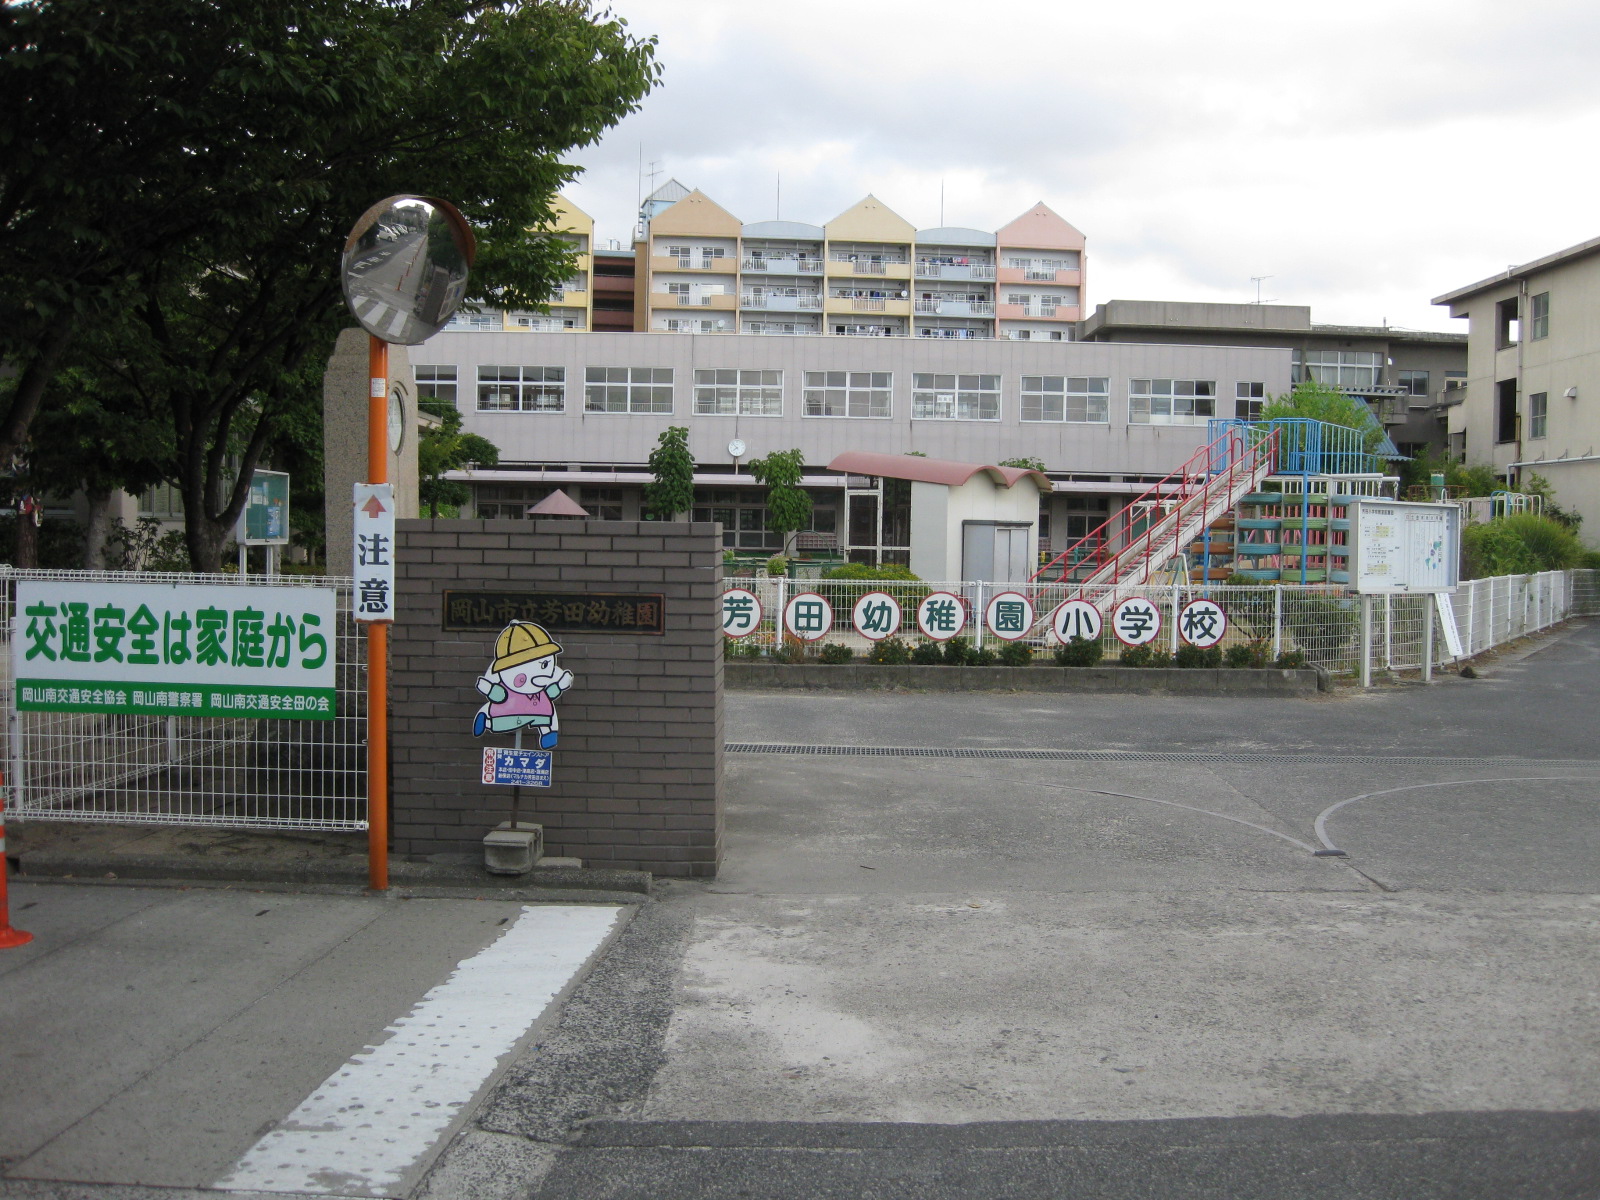 kindergarten ・ Nursery. Okayama Yoshida kindergarten (kindergarten ・ 983m to the nursery)